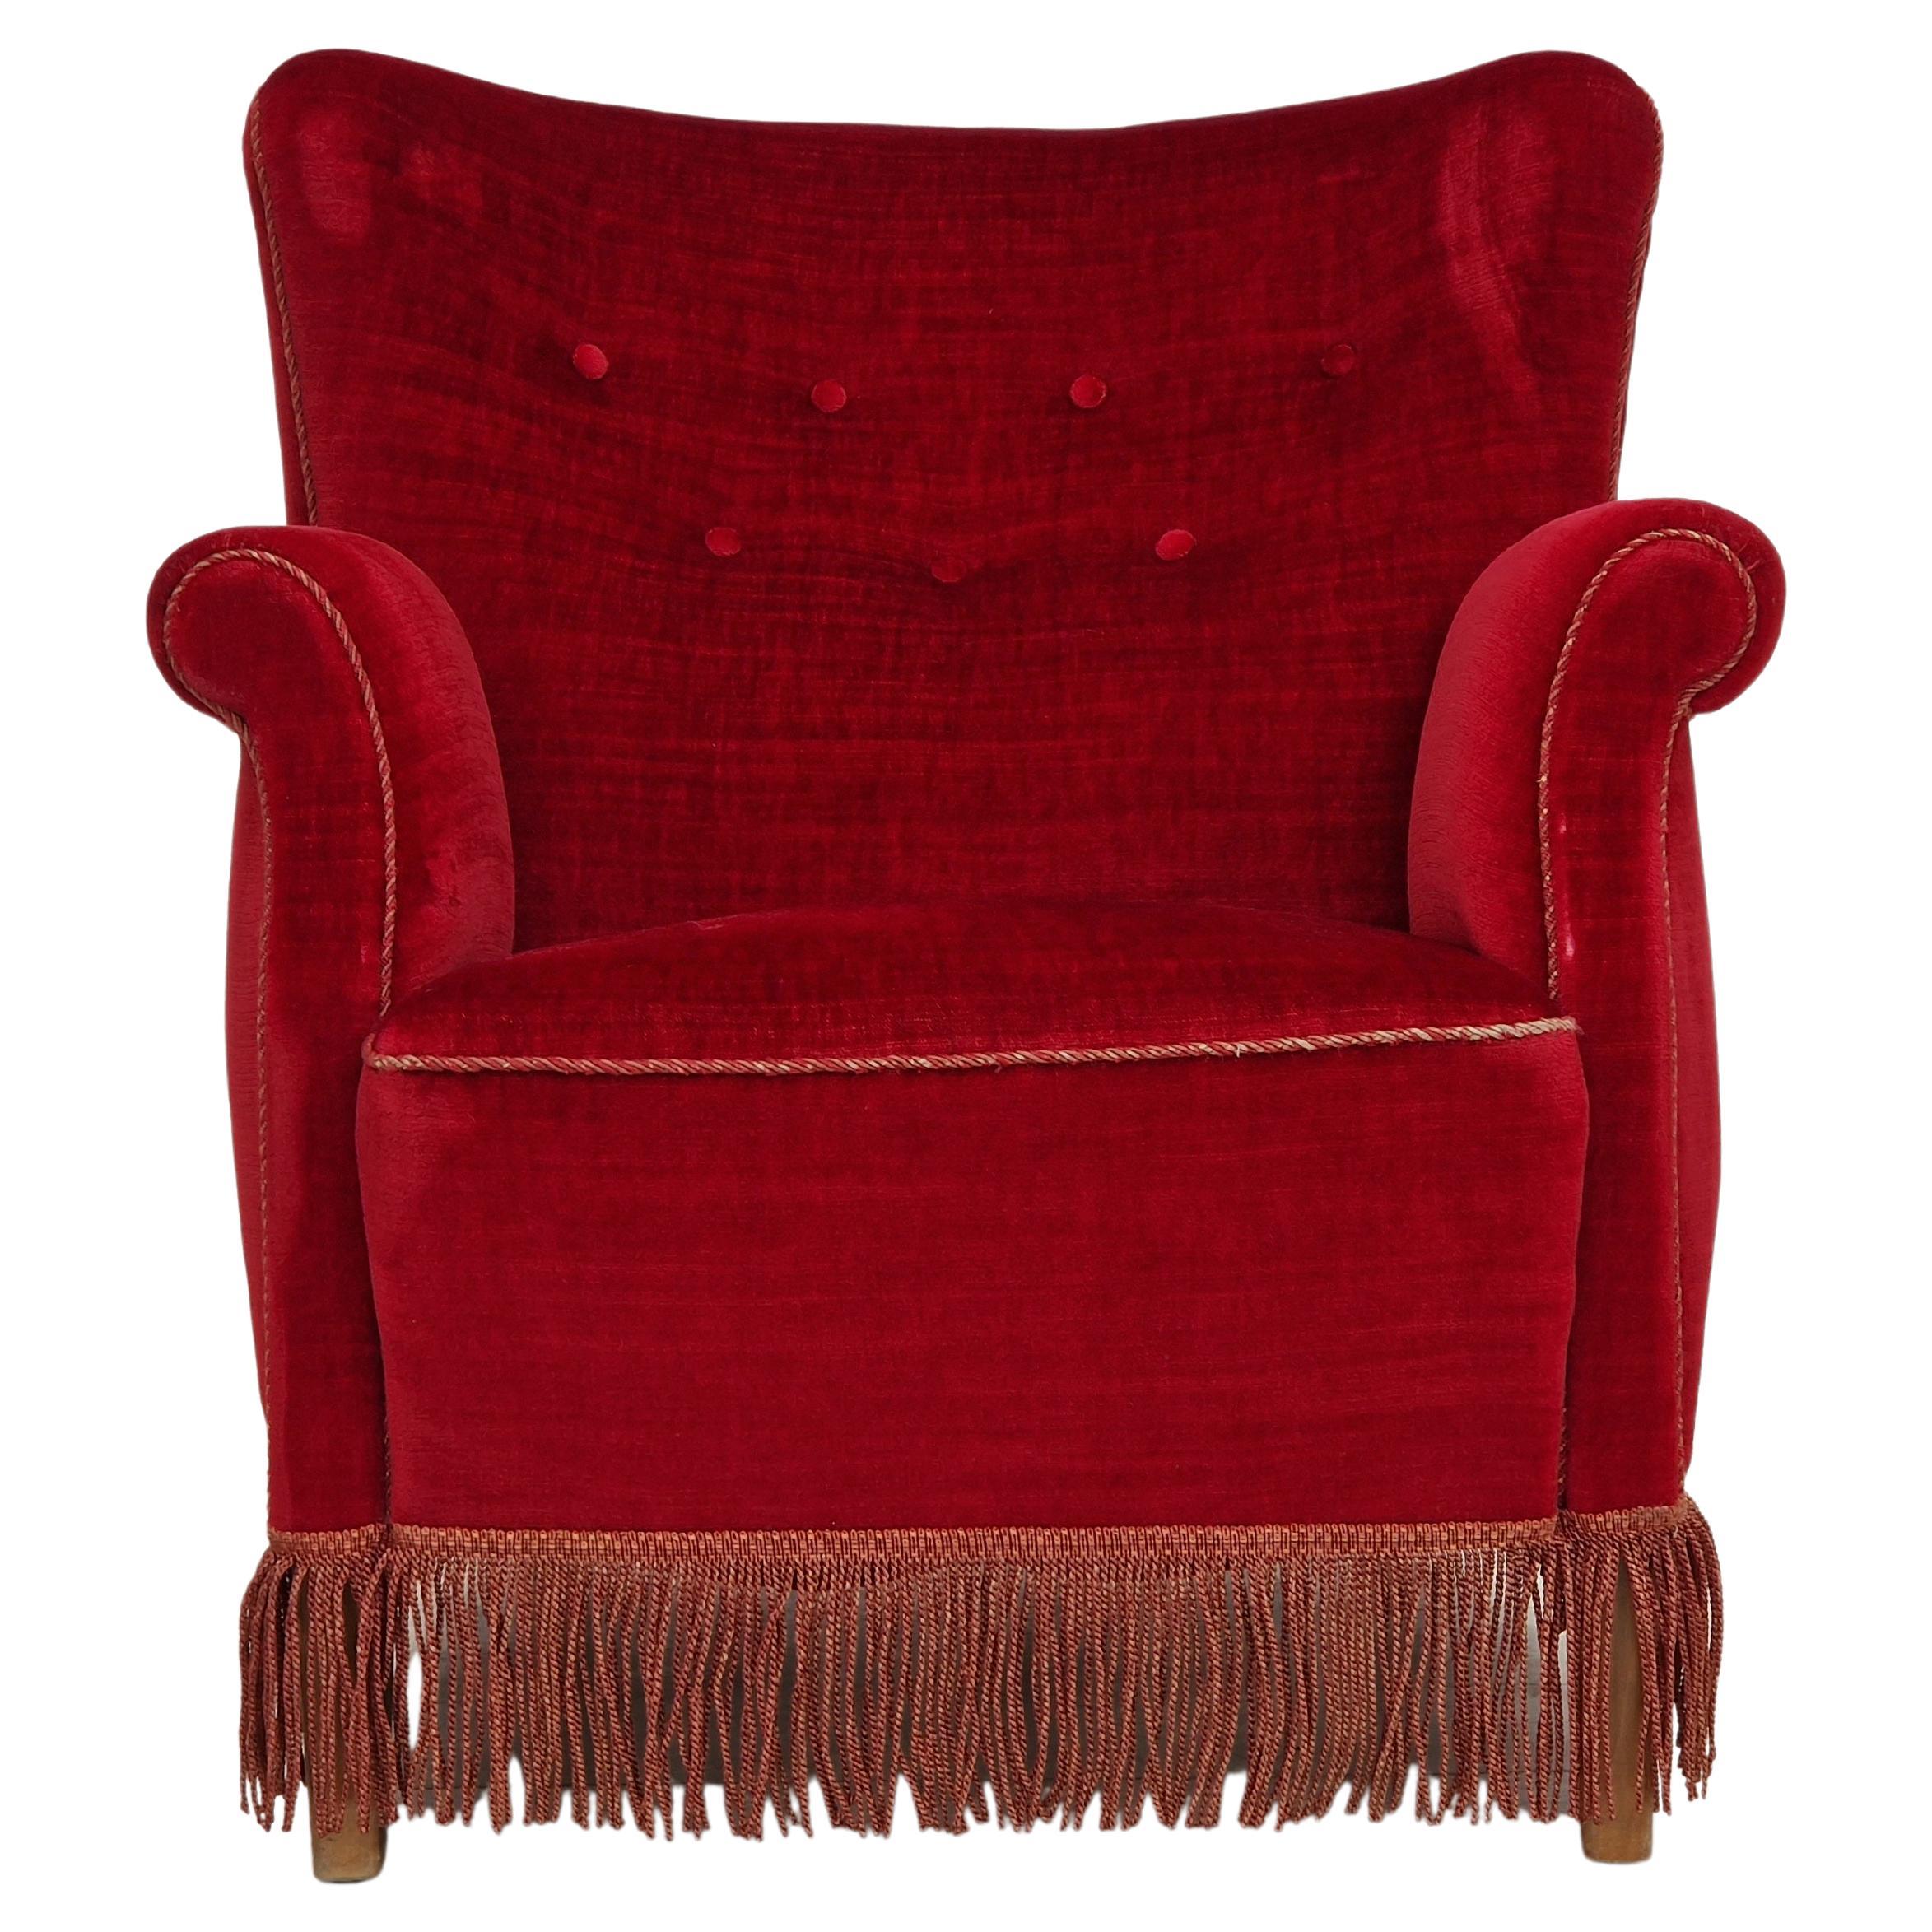 1960s, Danish Vintage Armchair in Cherry-Red Velvet For Sale at 1stDibs